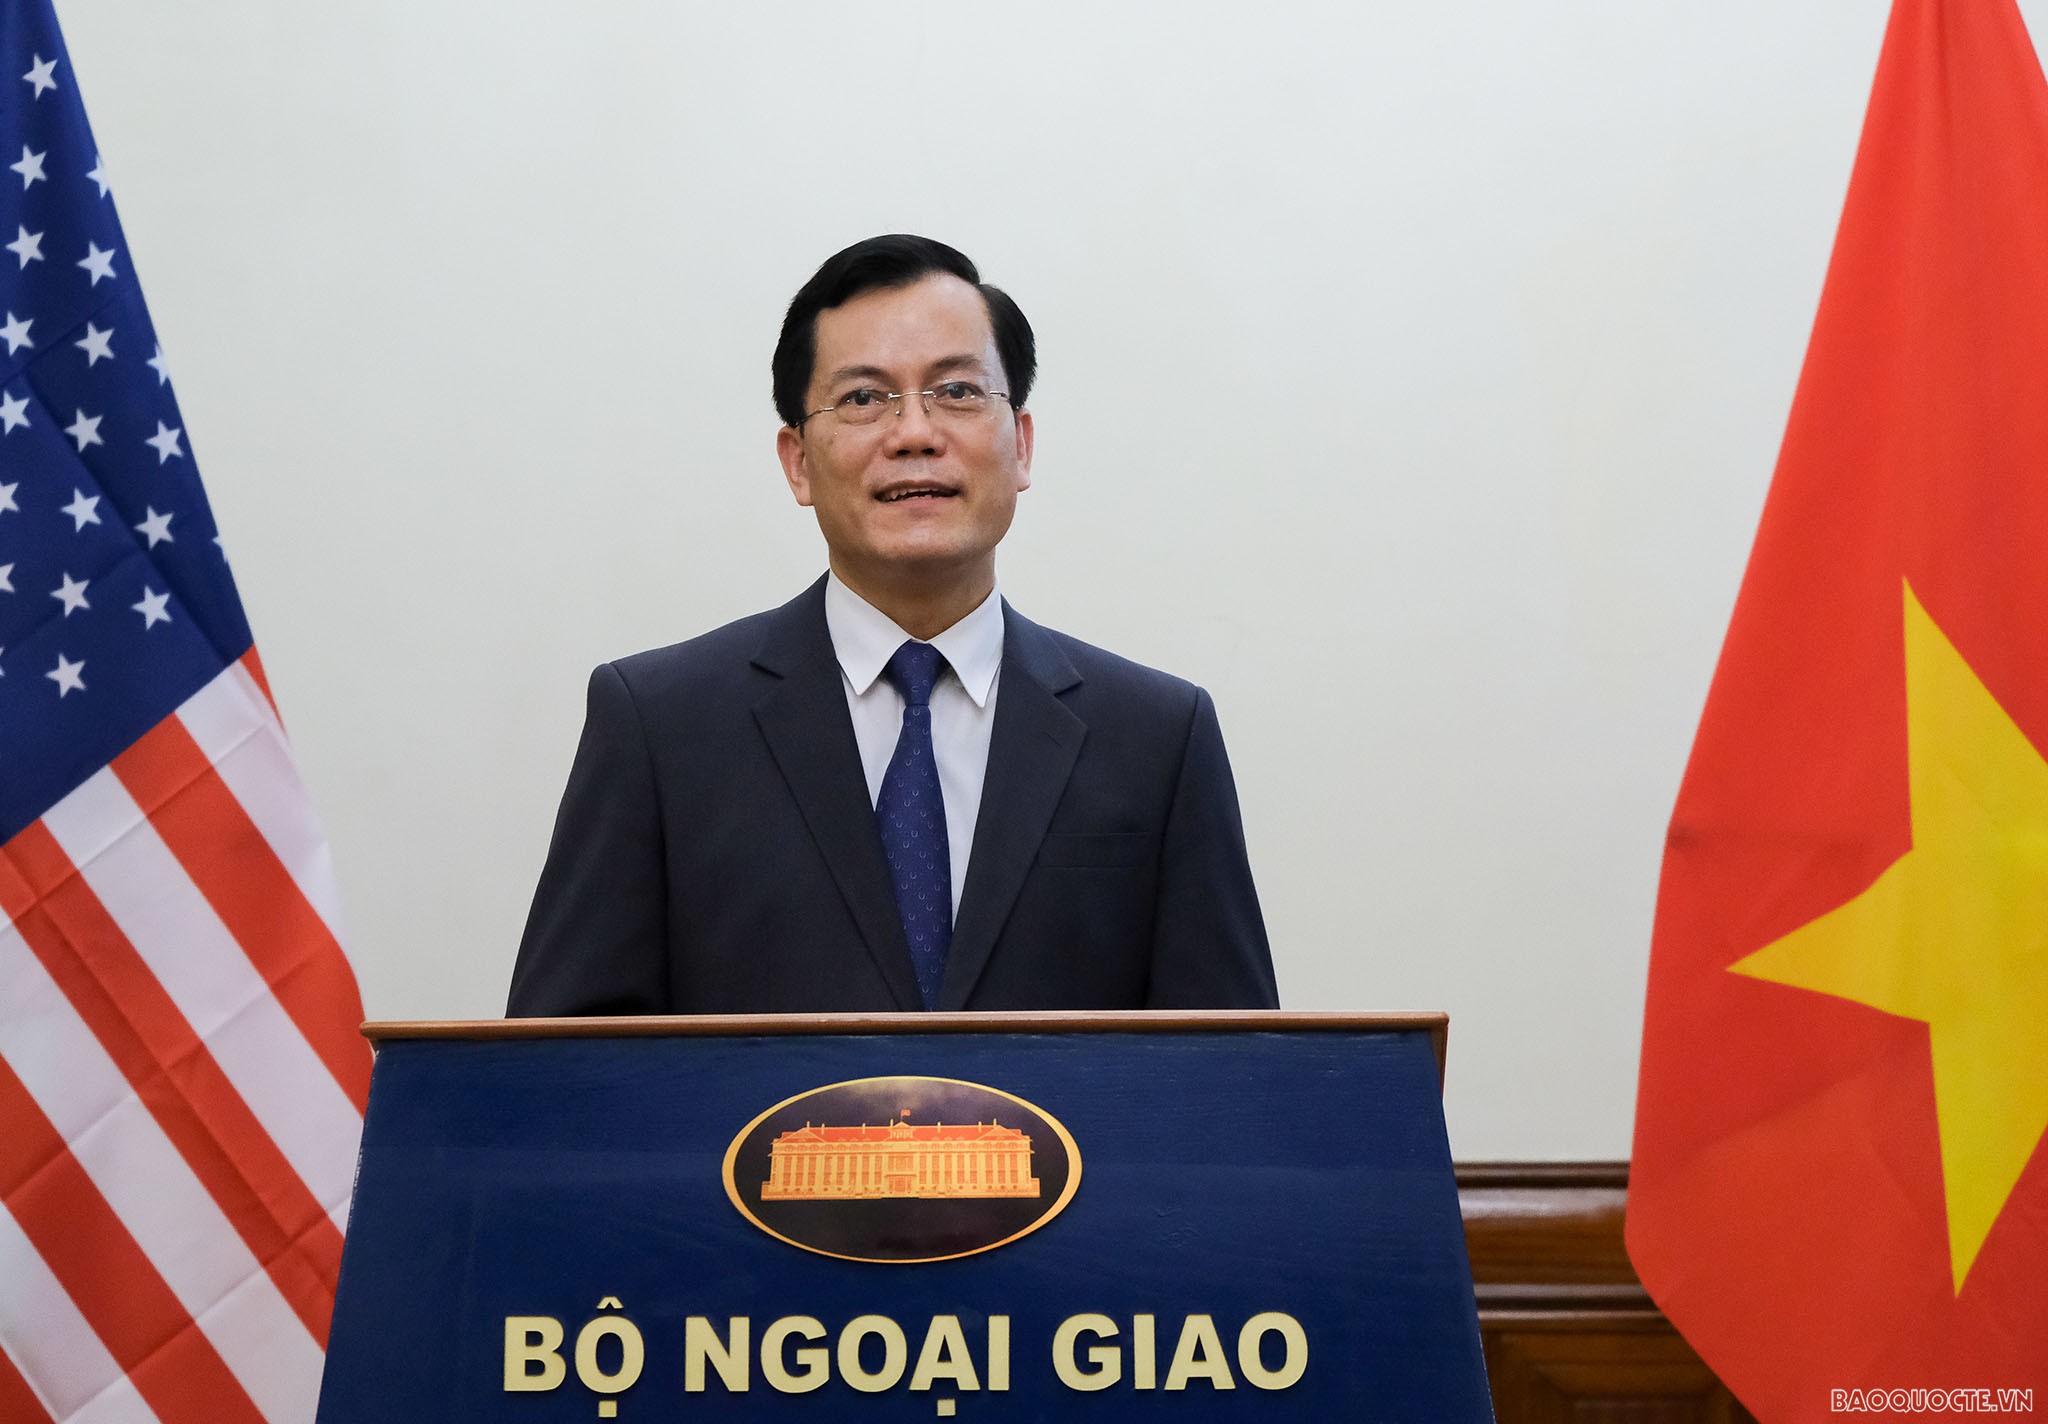 Ông Hà Kim Ngọc tiếp tục giữ chức Thứ trưởng Bộ Ngoại giao